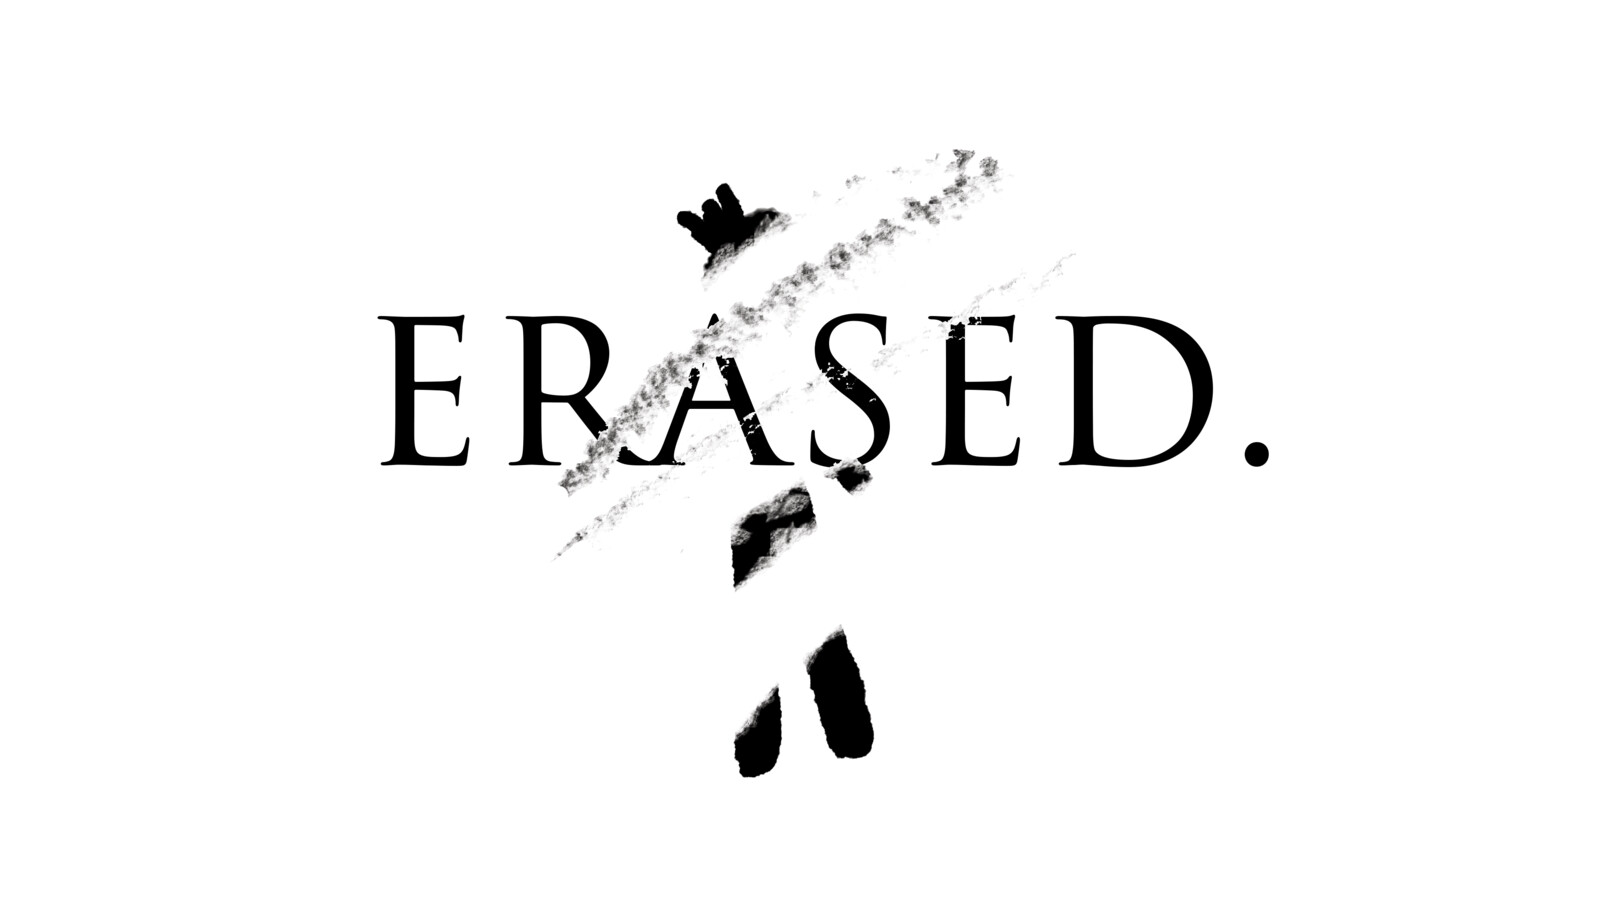 Erased.